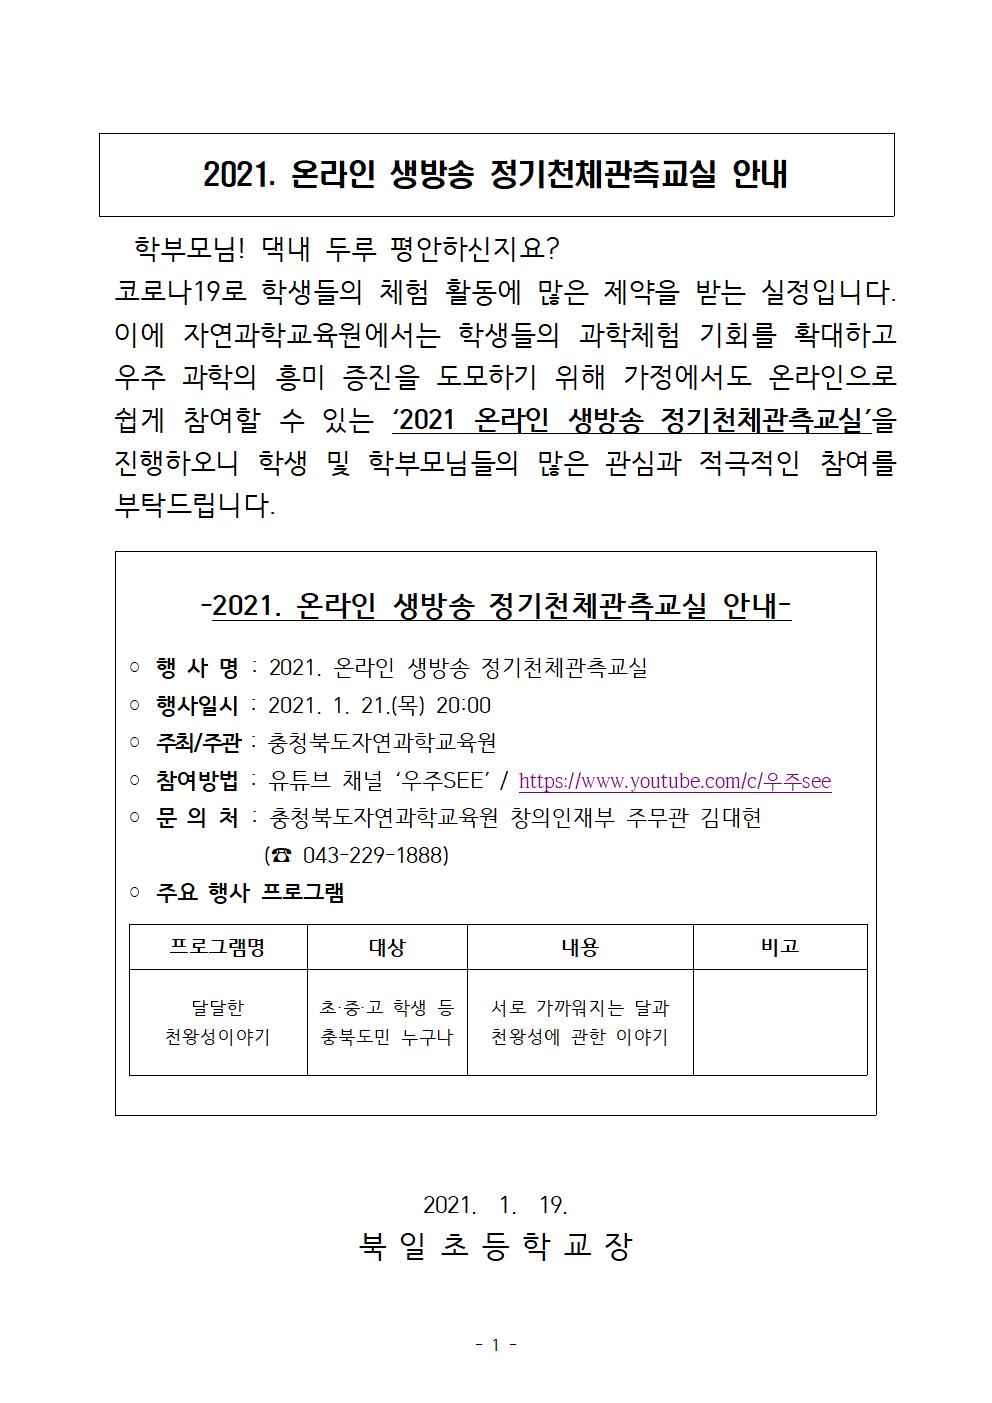 충청북도자연과학교육원 창의인재부_2021. 온라인 생방송 정기천체관측교실 안내 001